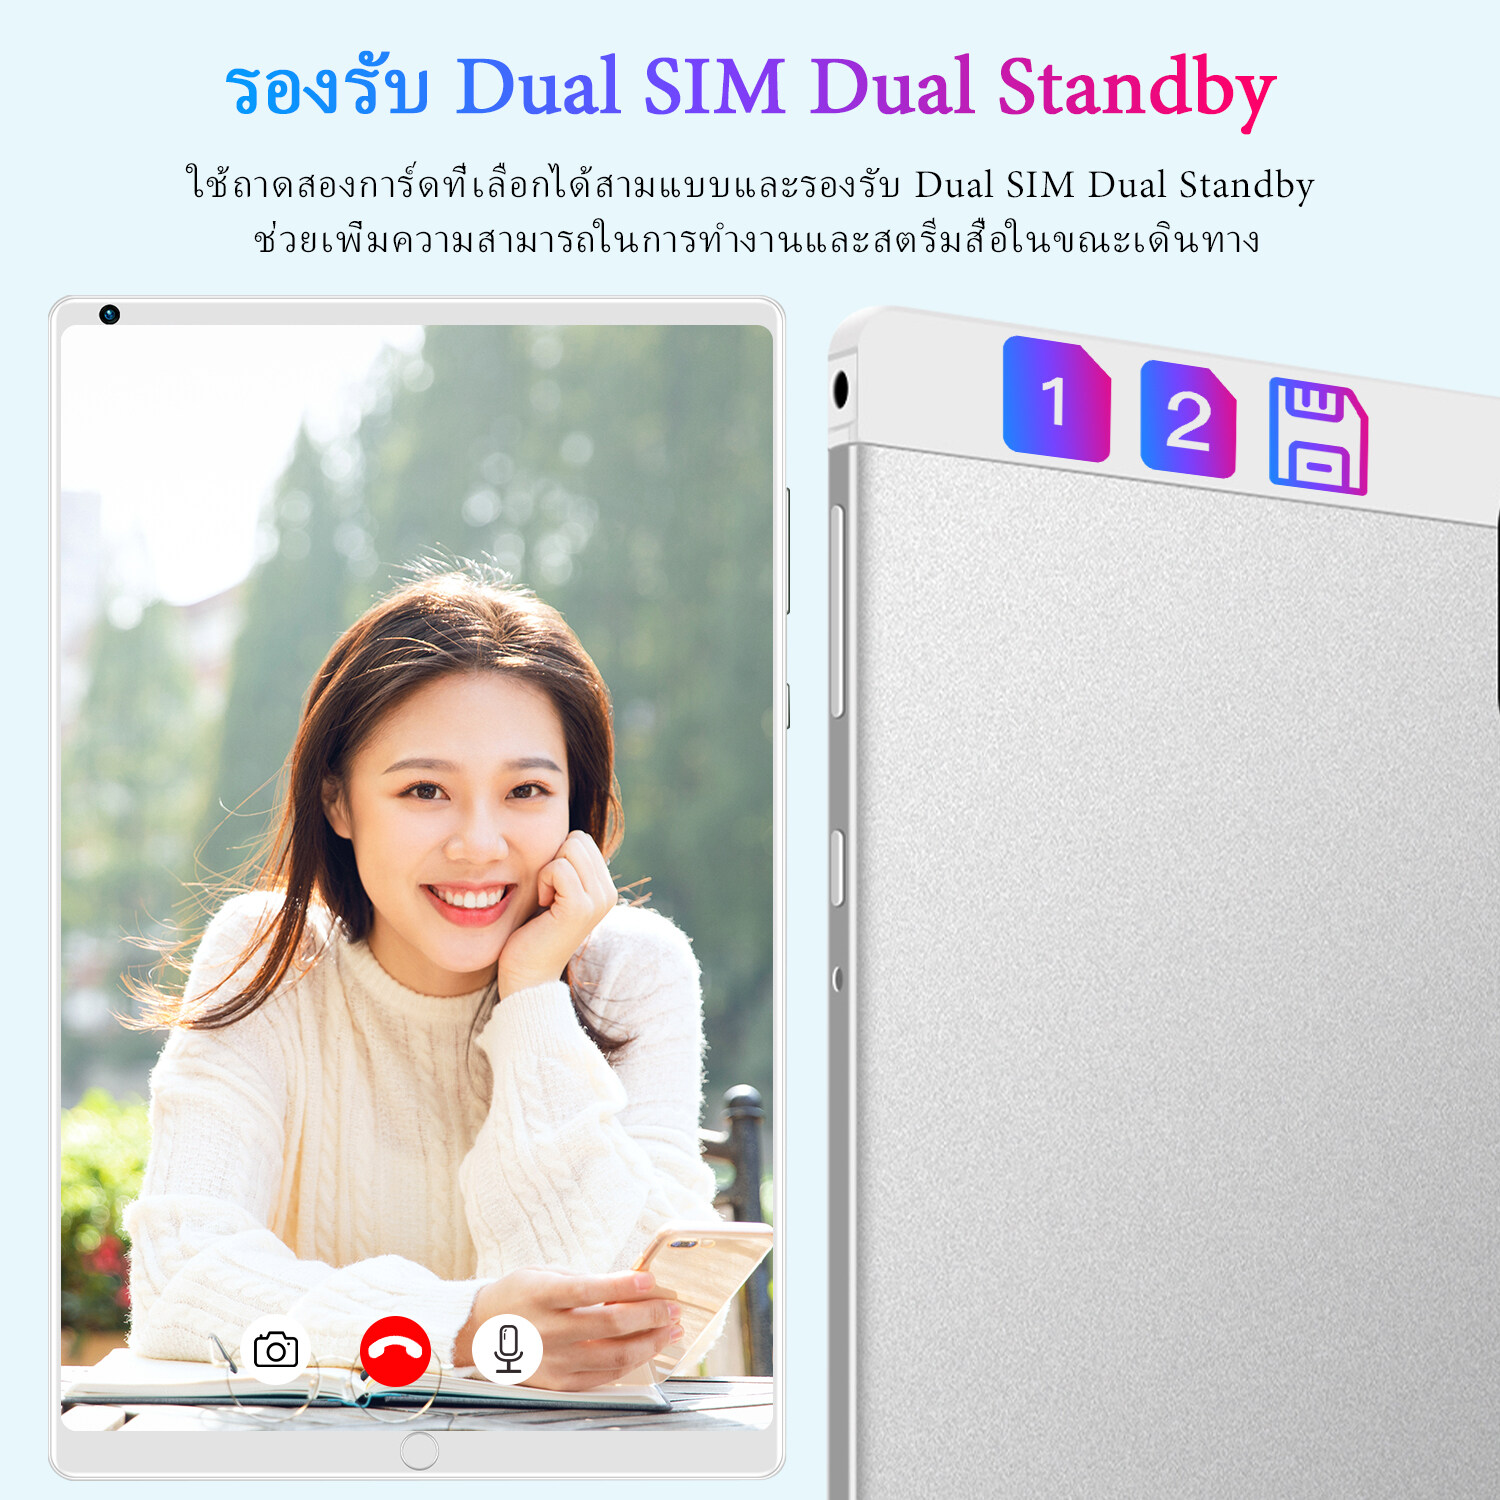 รูปภาพเพิ่มเติมของ 【ซื้อ 1 แถม 1】ใหม่ Sansumg Tab A8 แท็บเล็ต 10.4 นิ้ว Tablet Wifi 4g/5G แท็บเล็ตพีซี RAM16G ROM512G แท็บเล็ตโทรได้ รองรับ 2 ซิมการ์ด Andorid11.0 Full HD 8800 mAh ไอเเพ็ด แท็บเล็ตราคาถูก ไอเเพ็ดส่งฟรี แท็บเล็ตของแท้ แท็บเล็ตราคาถูกรุ่นล่าสุด รับประกัน 1 ปี